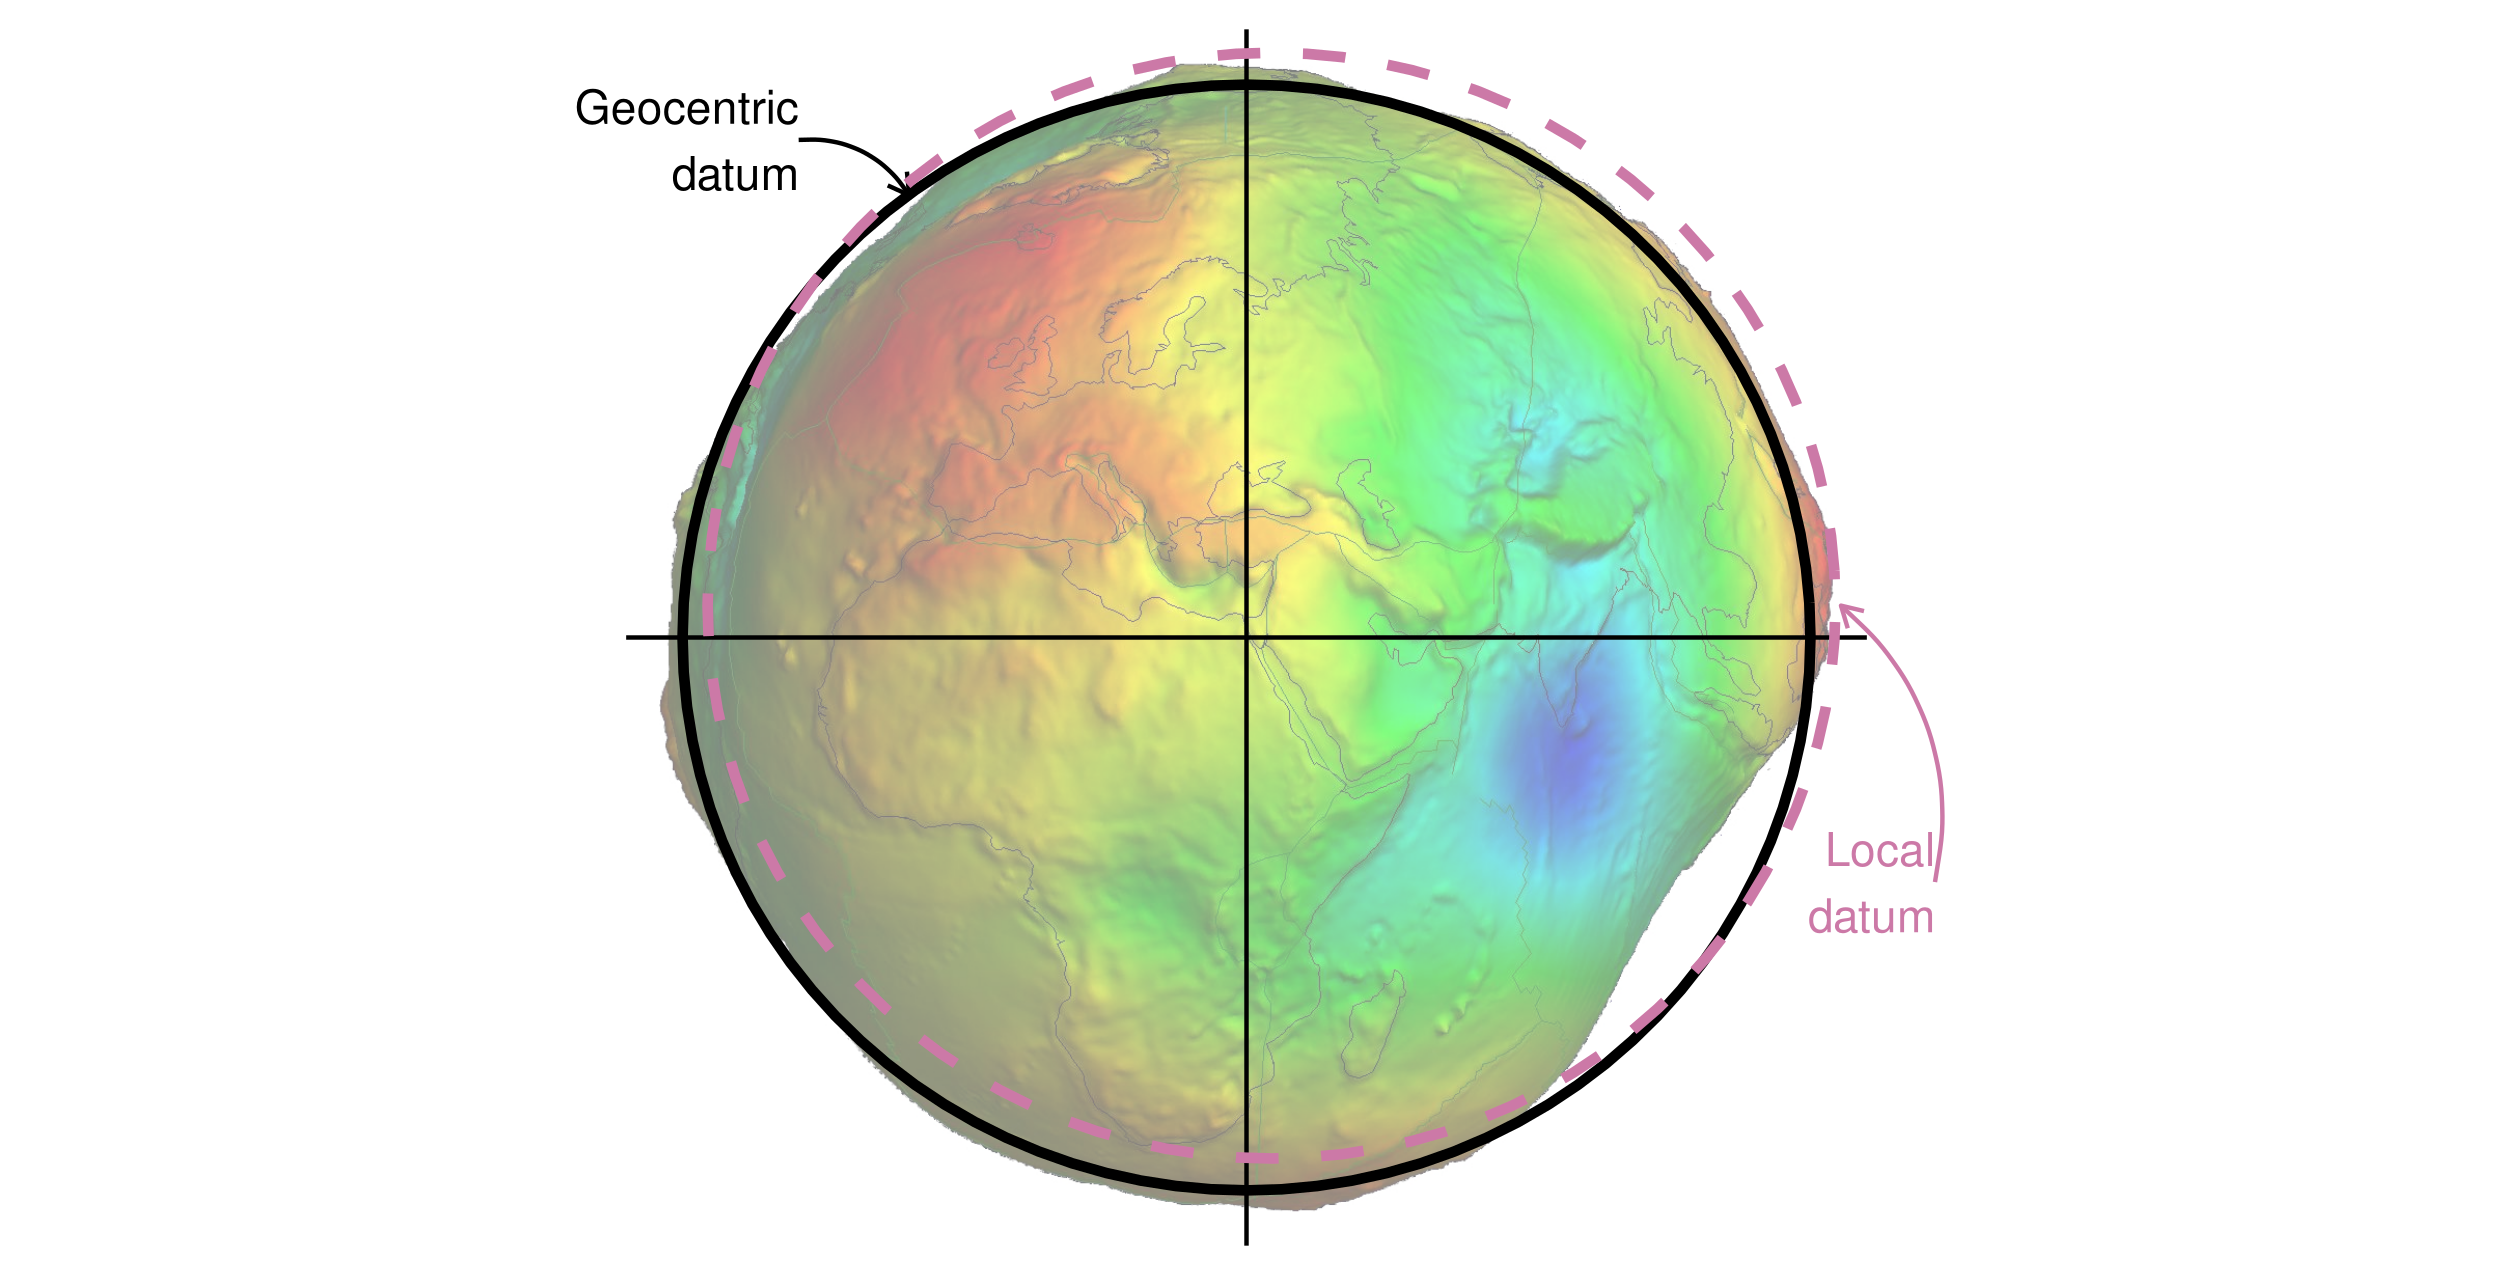 Données géocentriques et géodésiques locales représentées sur un géoïde (en fausses couleurs et avec un facteur d’échelle de 10 000 pour l’exagération verticale). L’image du géoïde est adaptée du travail de Ince et al. (2019).